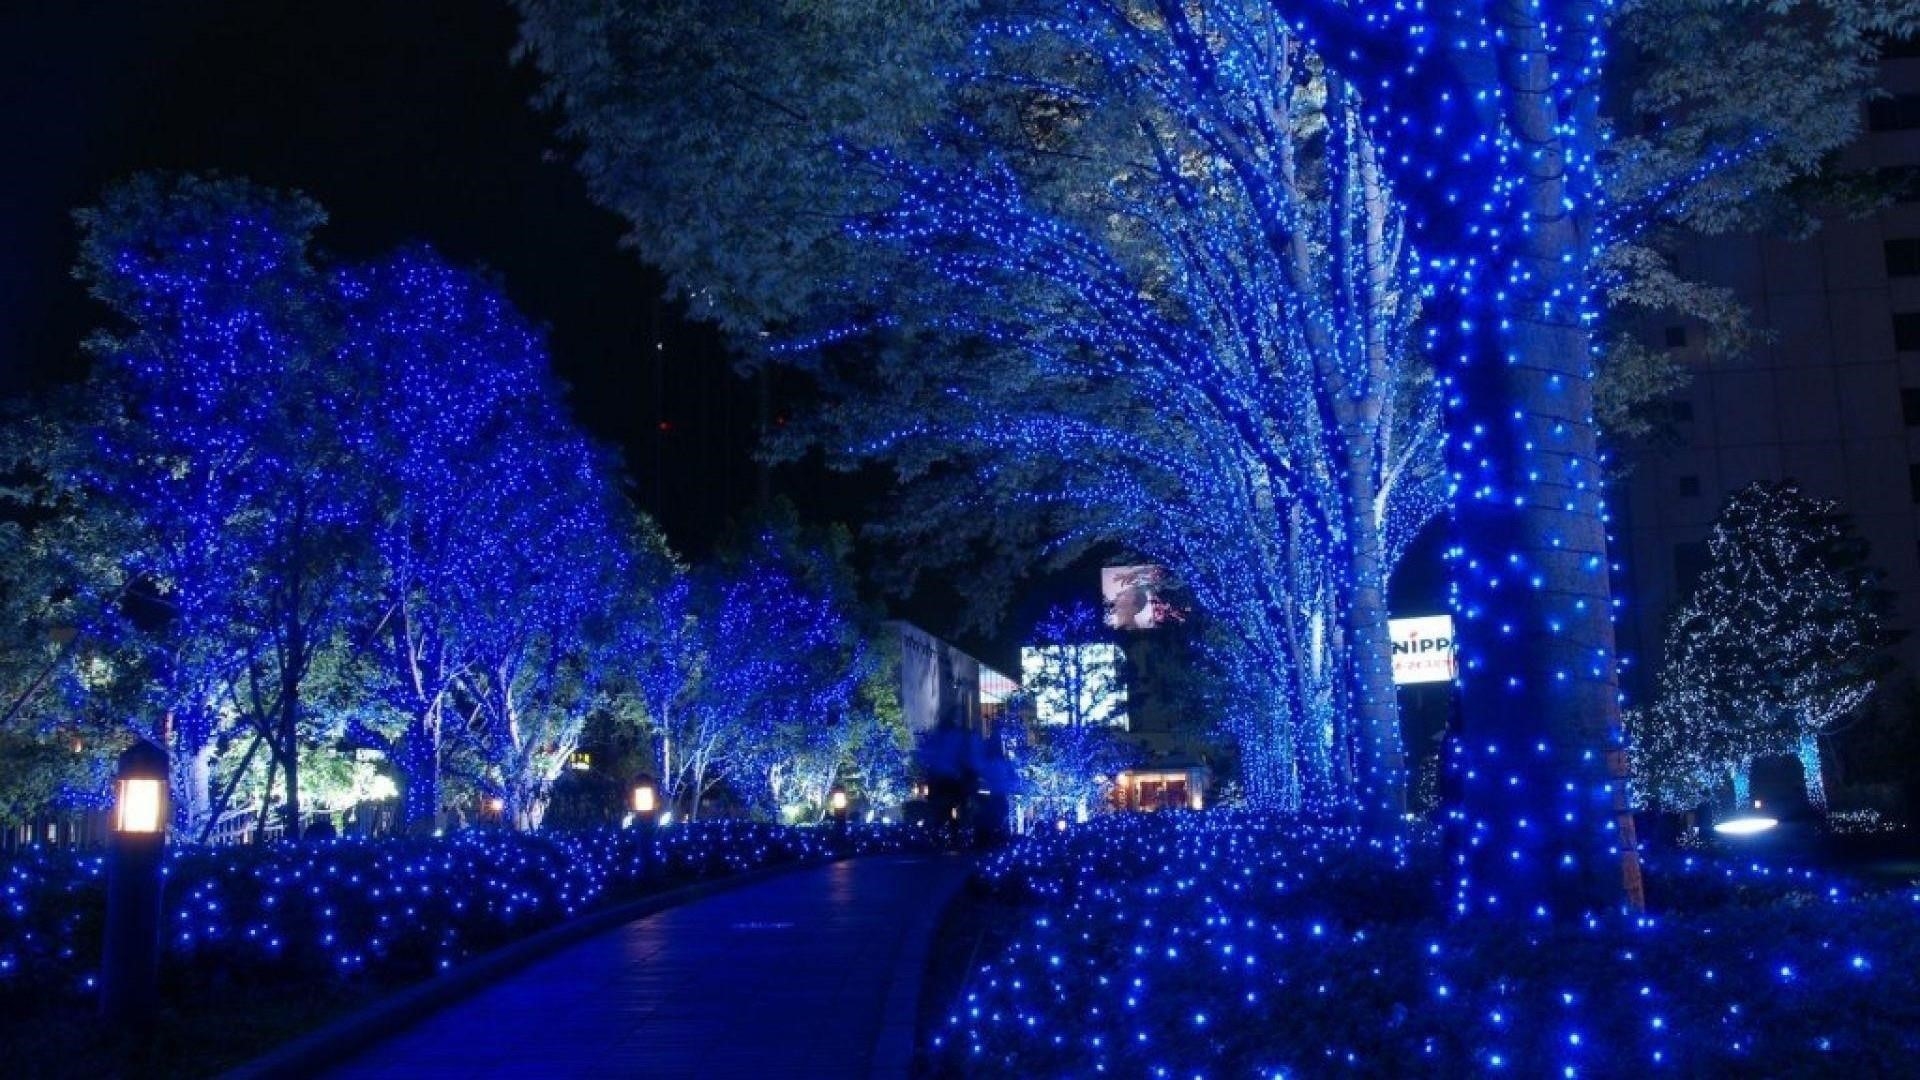 Прохладные синие огни украшали деревья парка во время ночной природы обои скачать